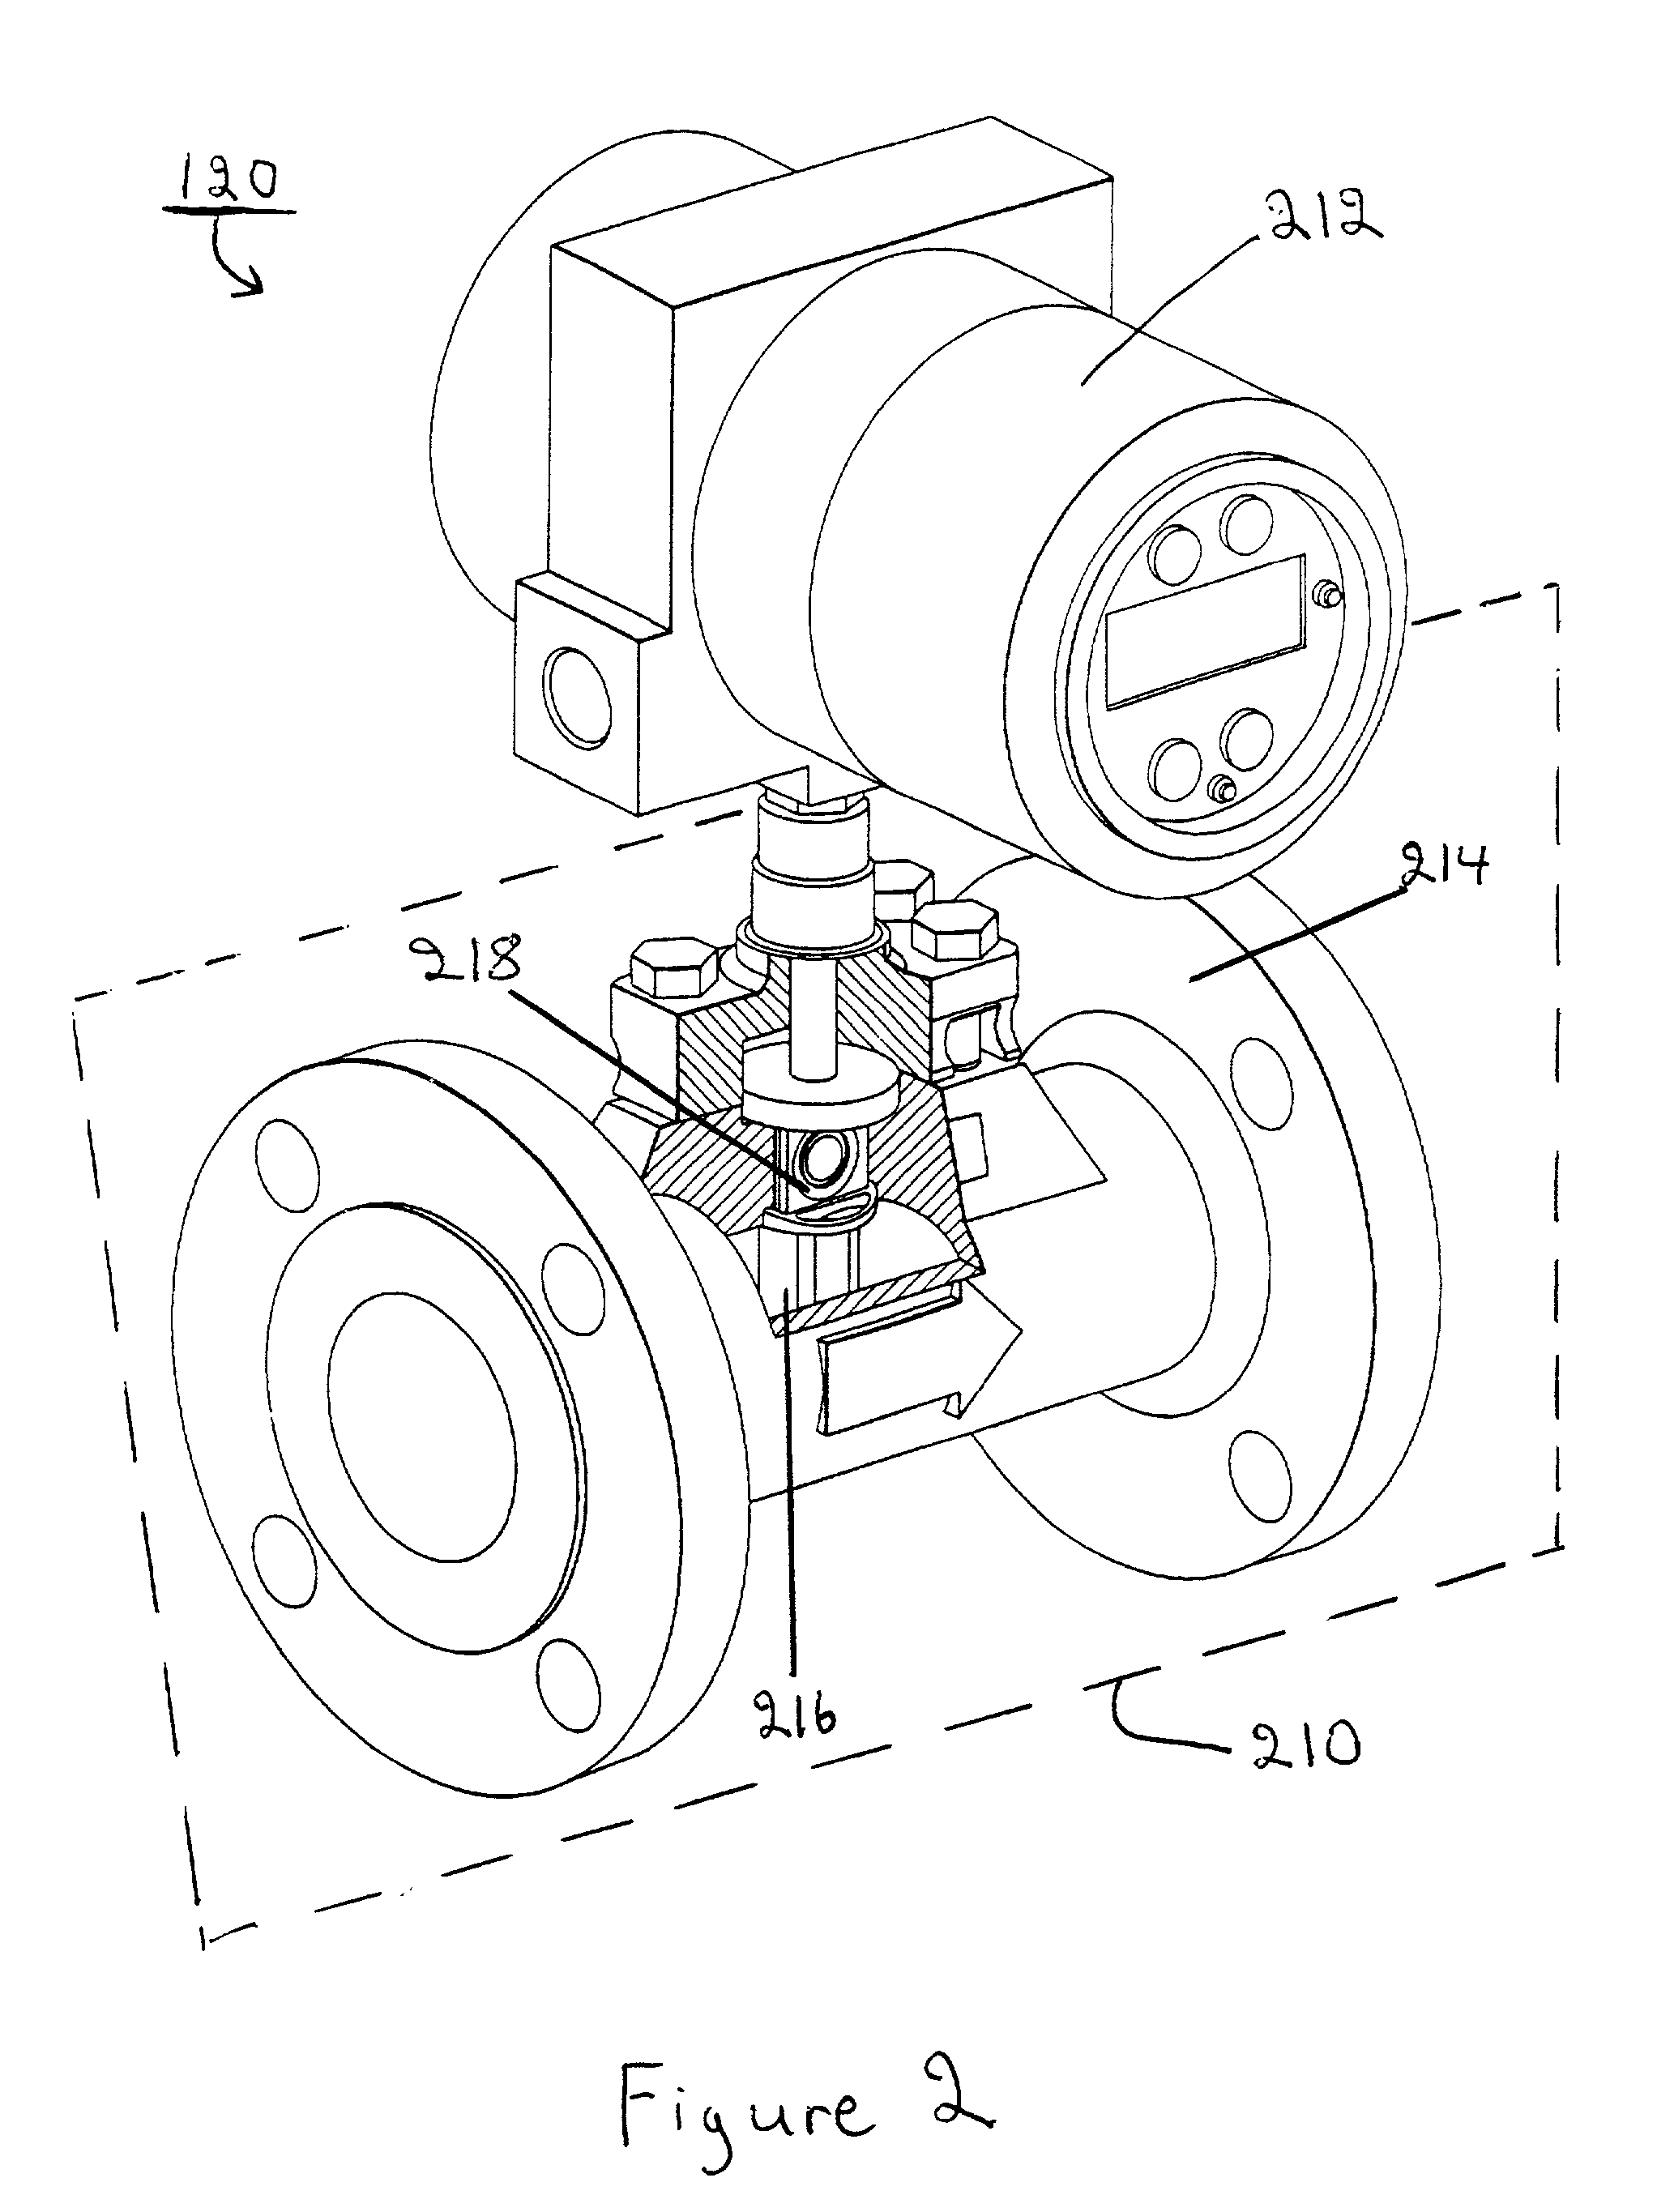 Vortex flowmeter